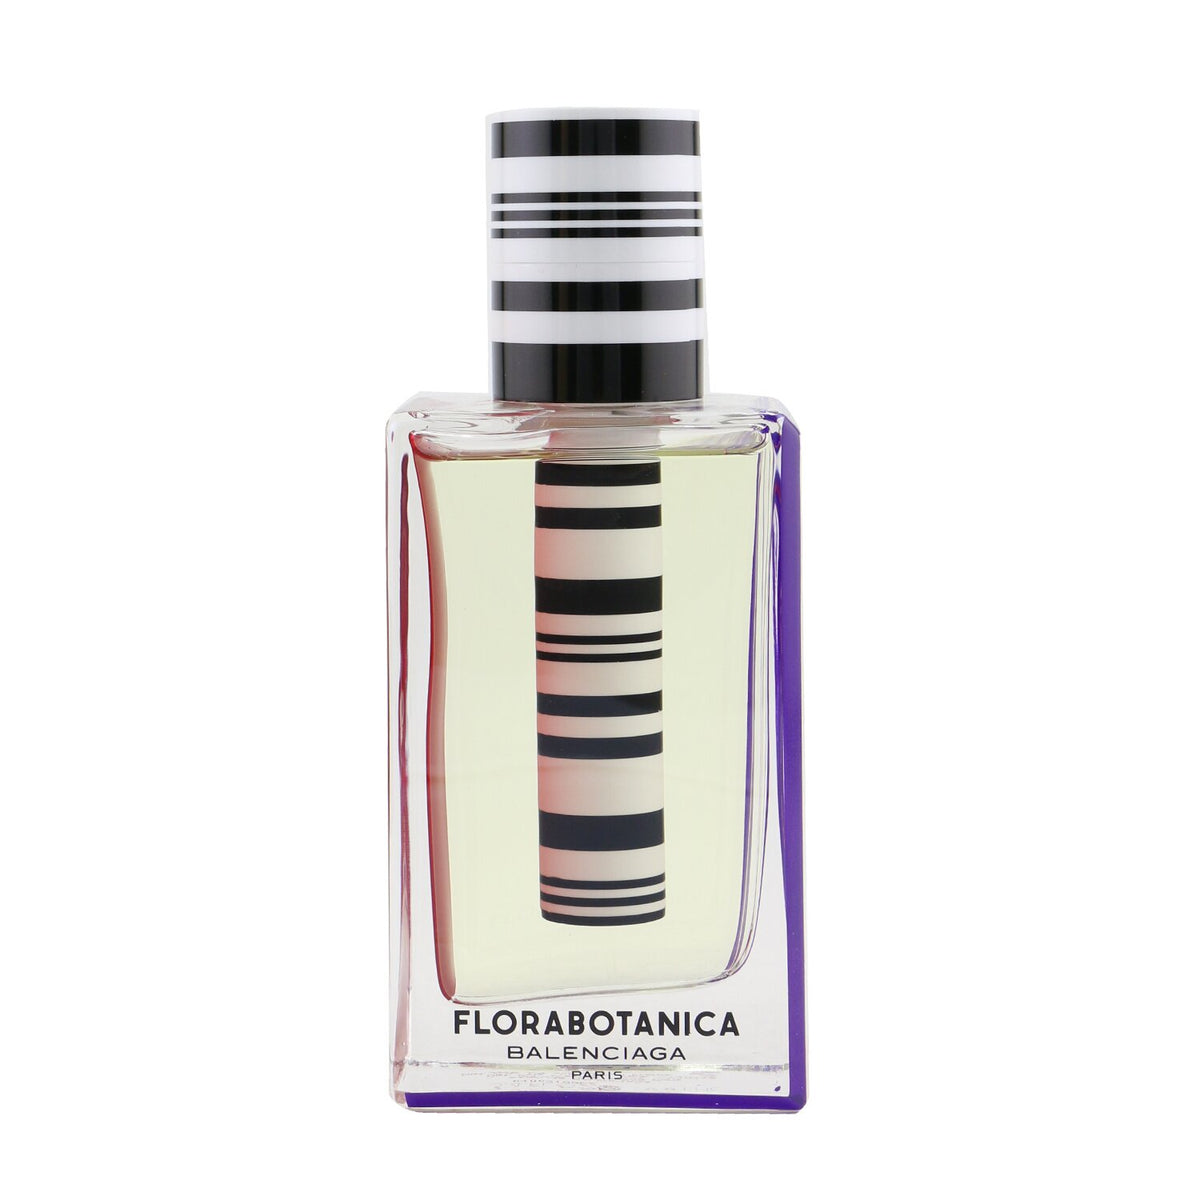 Florabotanica Eau Parfum for Sale Balenciaga, Ladies Fragrance, Buy Now – Author